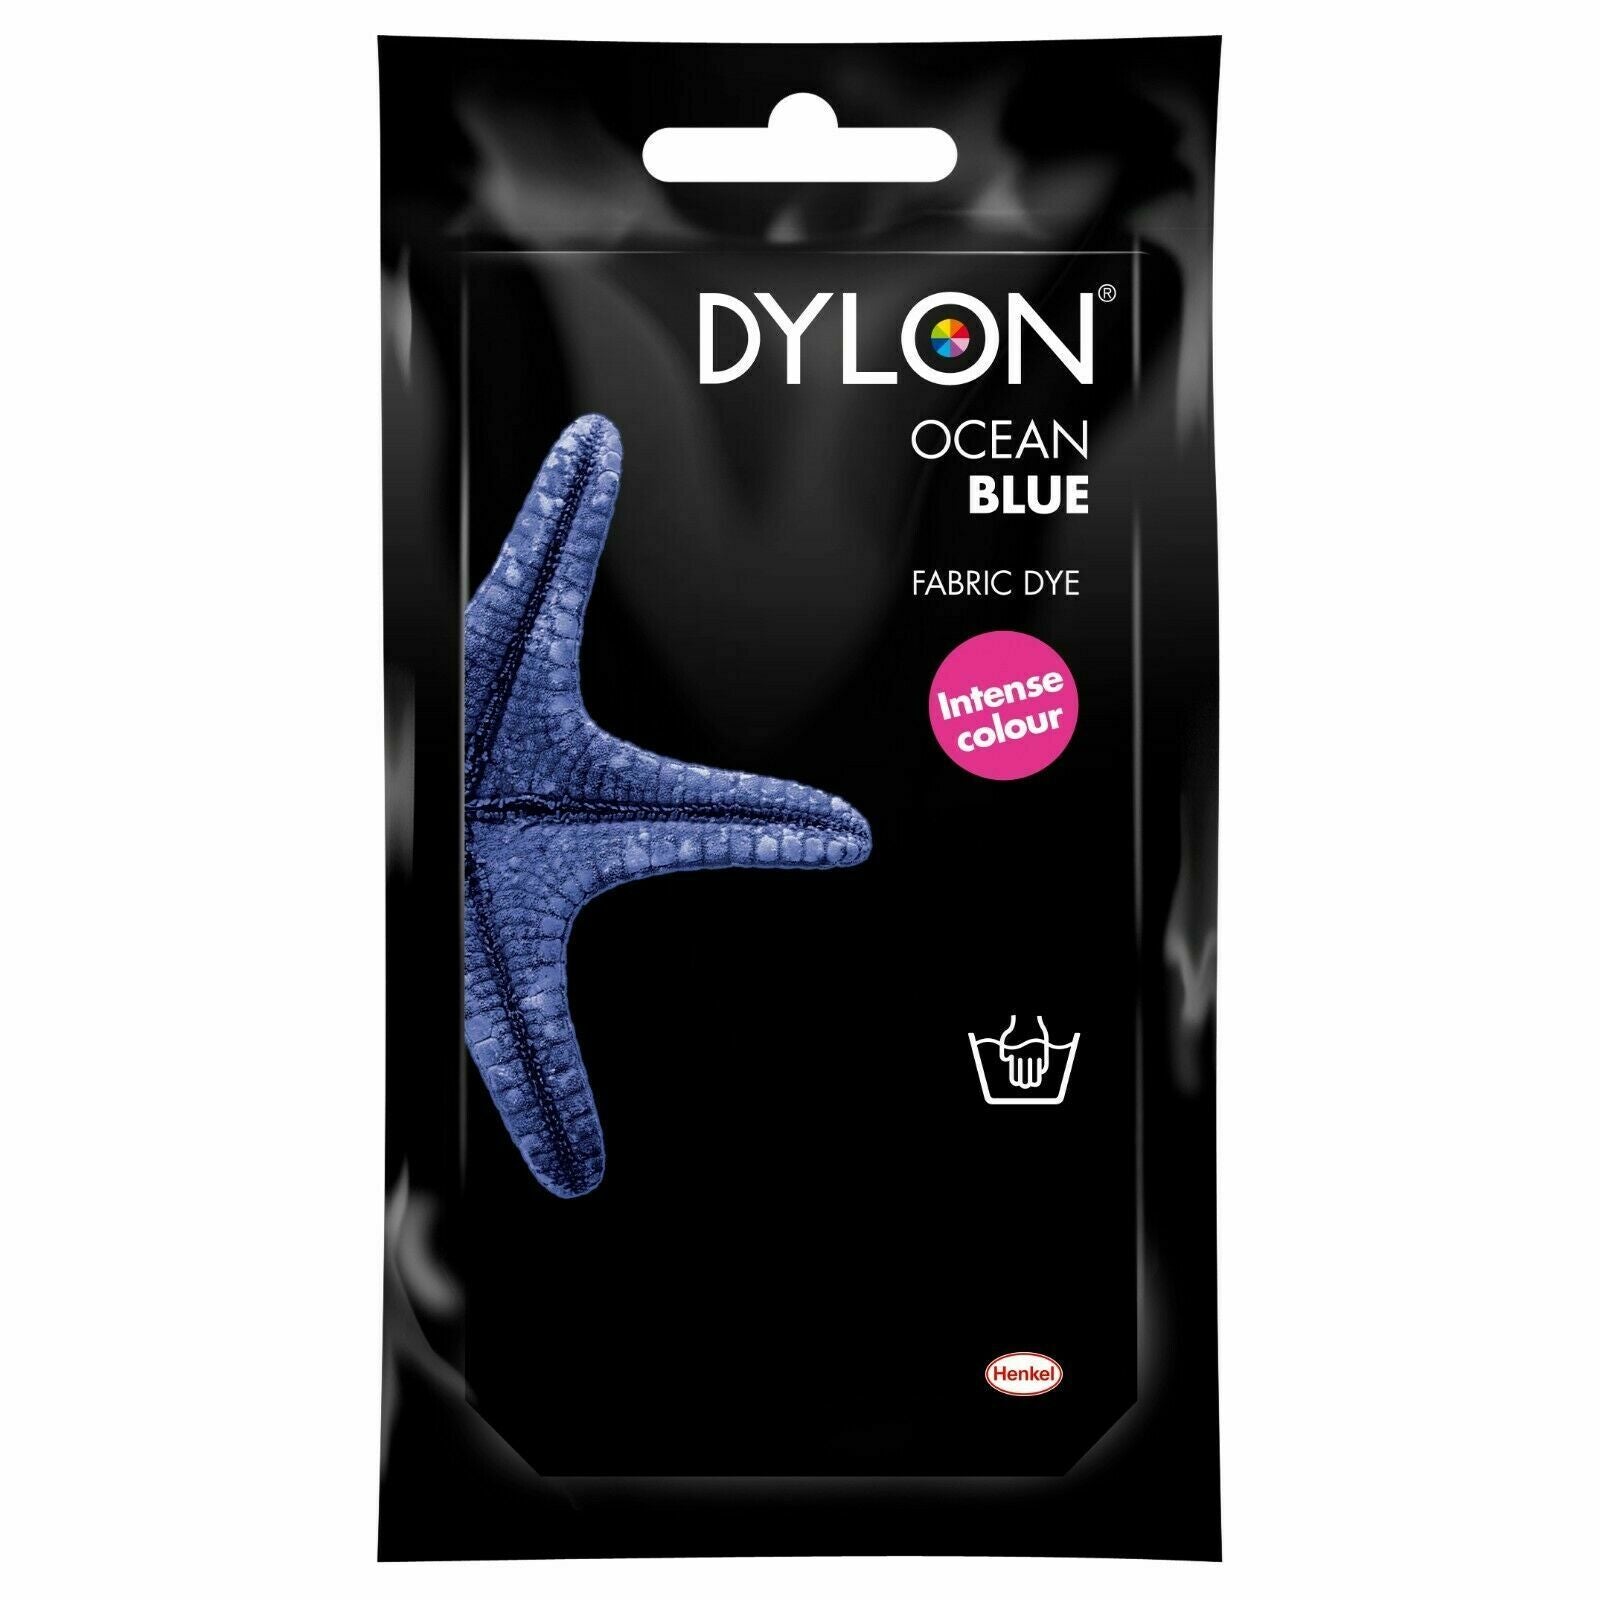 Dylon Hand Fabric Dye Sachet 50g- Ocean Blue - Pound A Metre